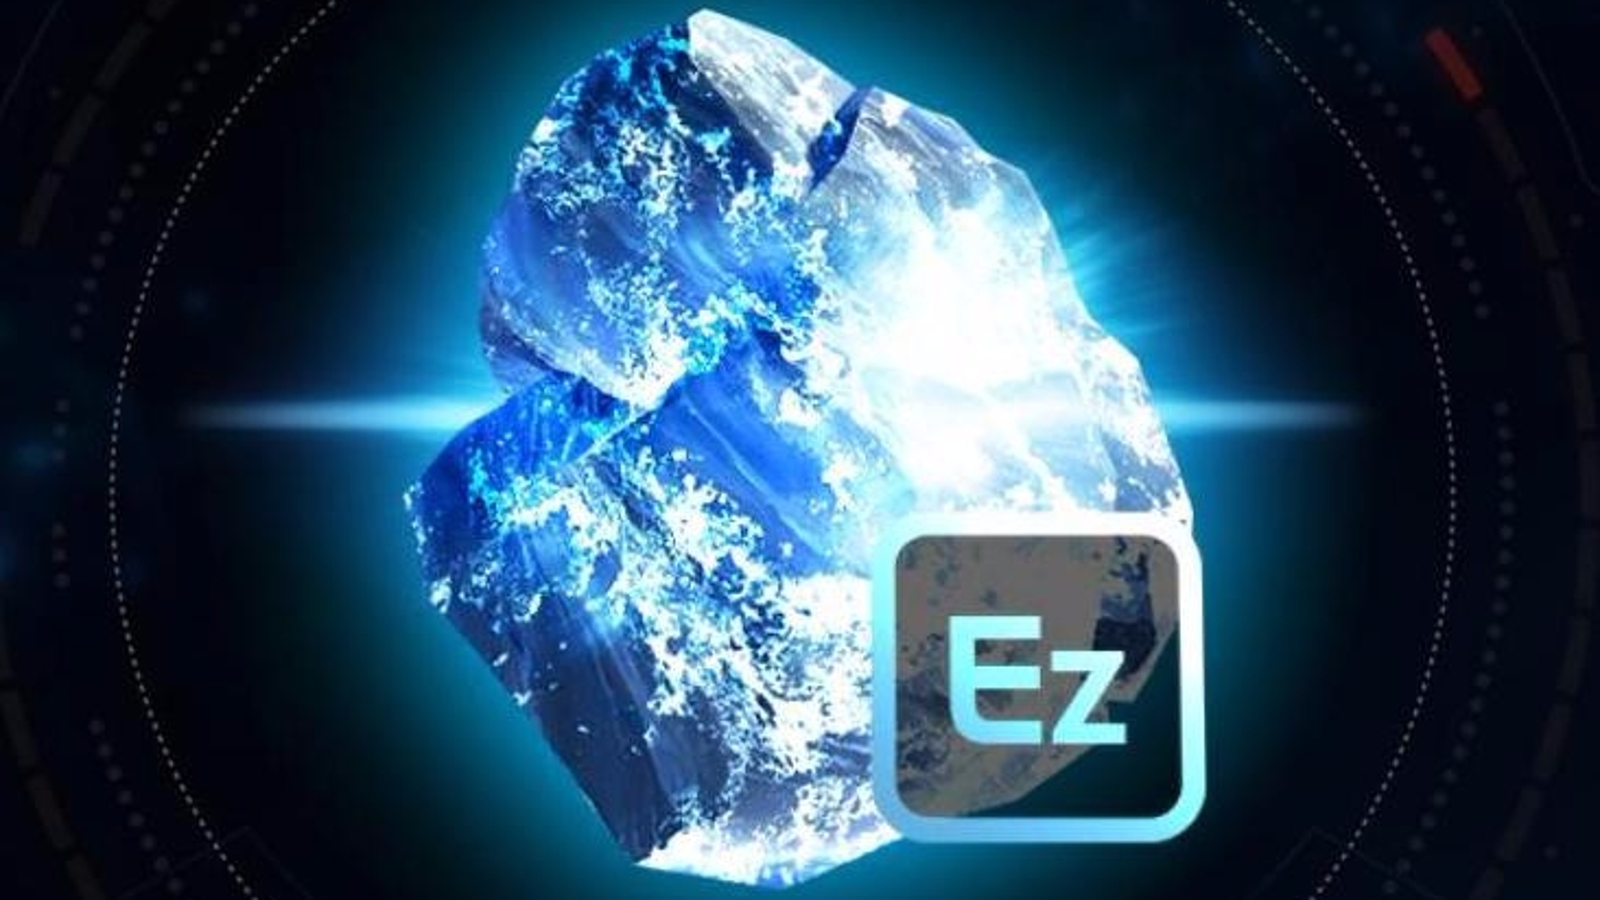 Element Zero. Eezo. Эффект Zero-Price. Element Mass. Elements nulled